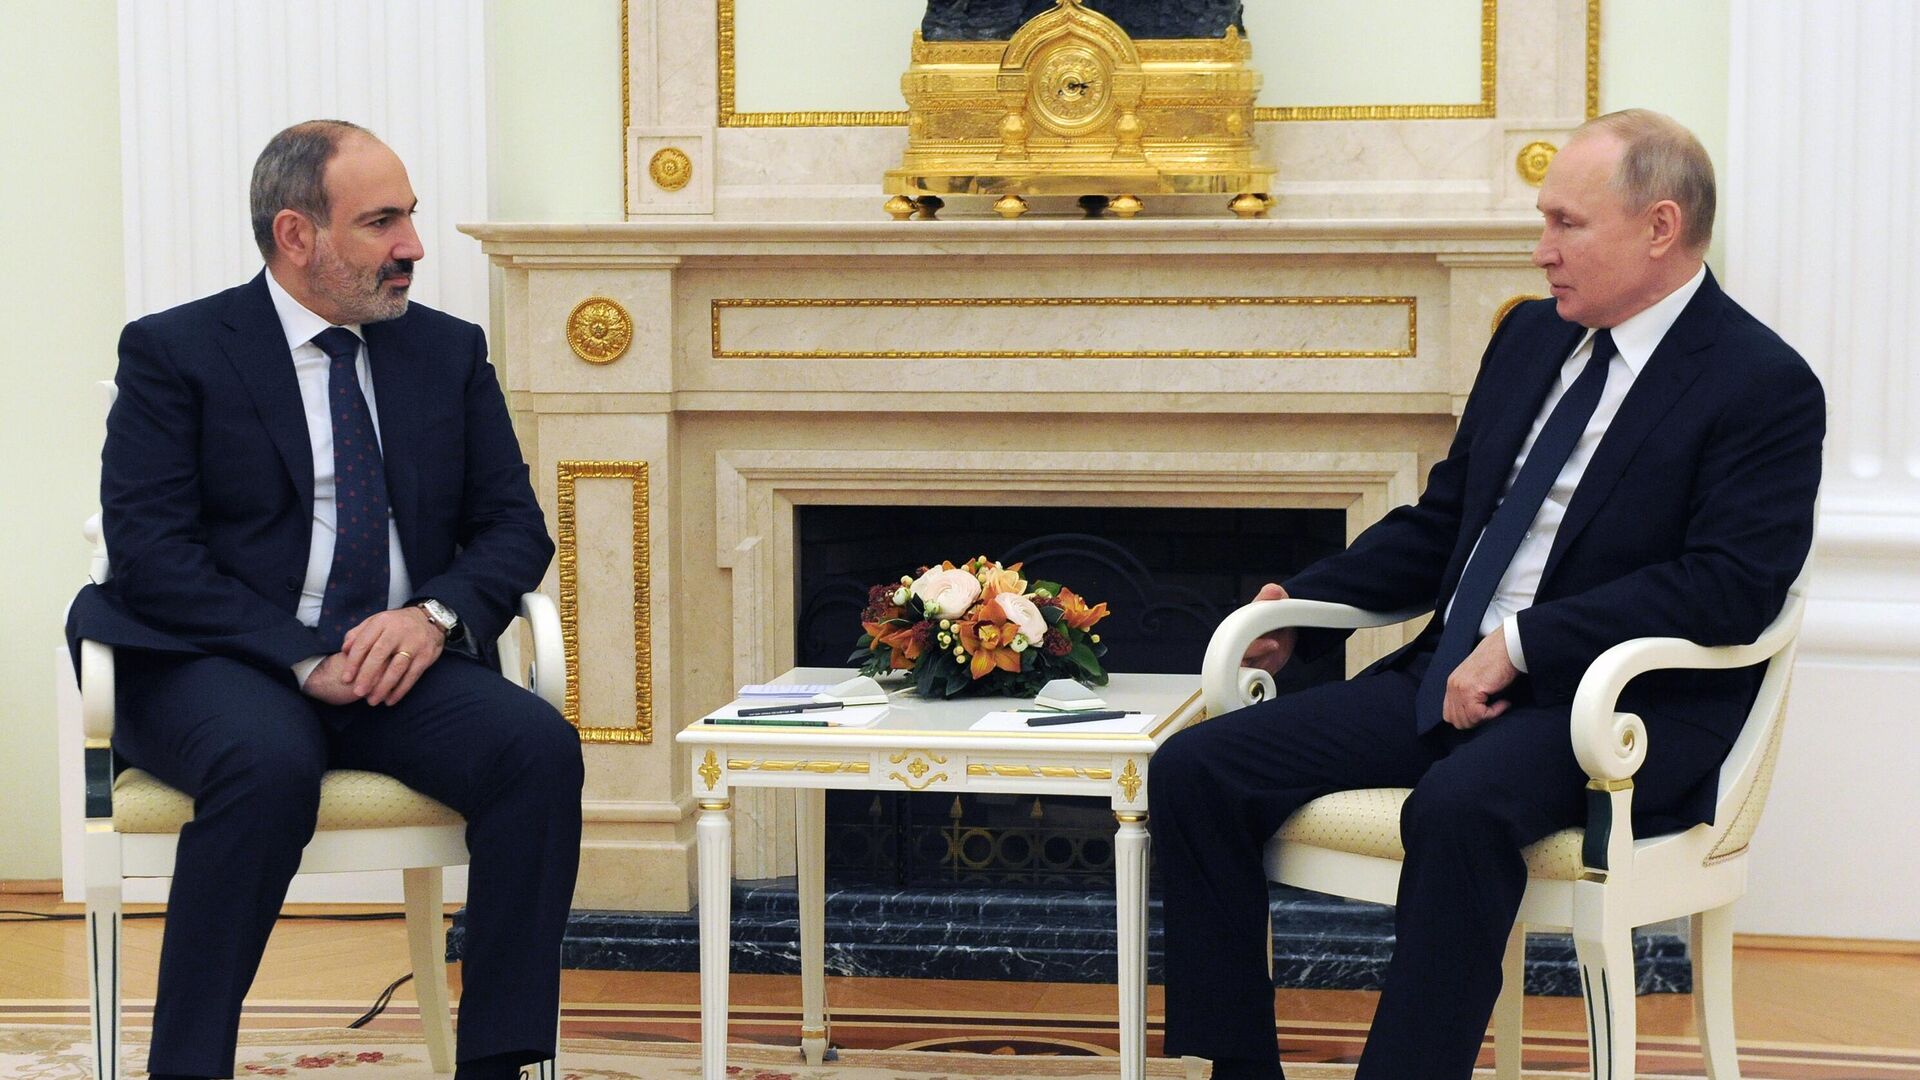 Президент РФ Владимир Путин и премьер-министр Армении Никол Пашинян (слева), архивное фото - Sputnik Lietuva, 1920, 14.05.2021